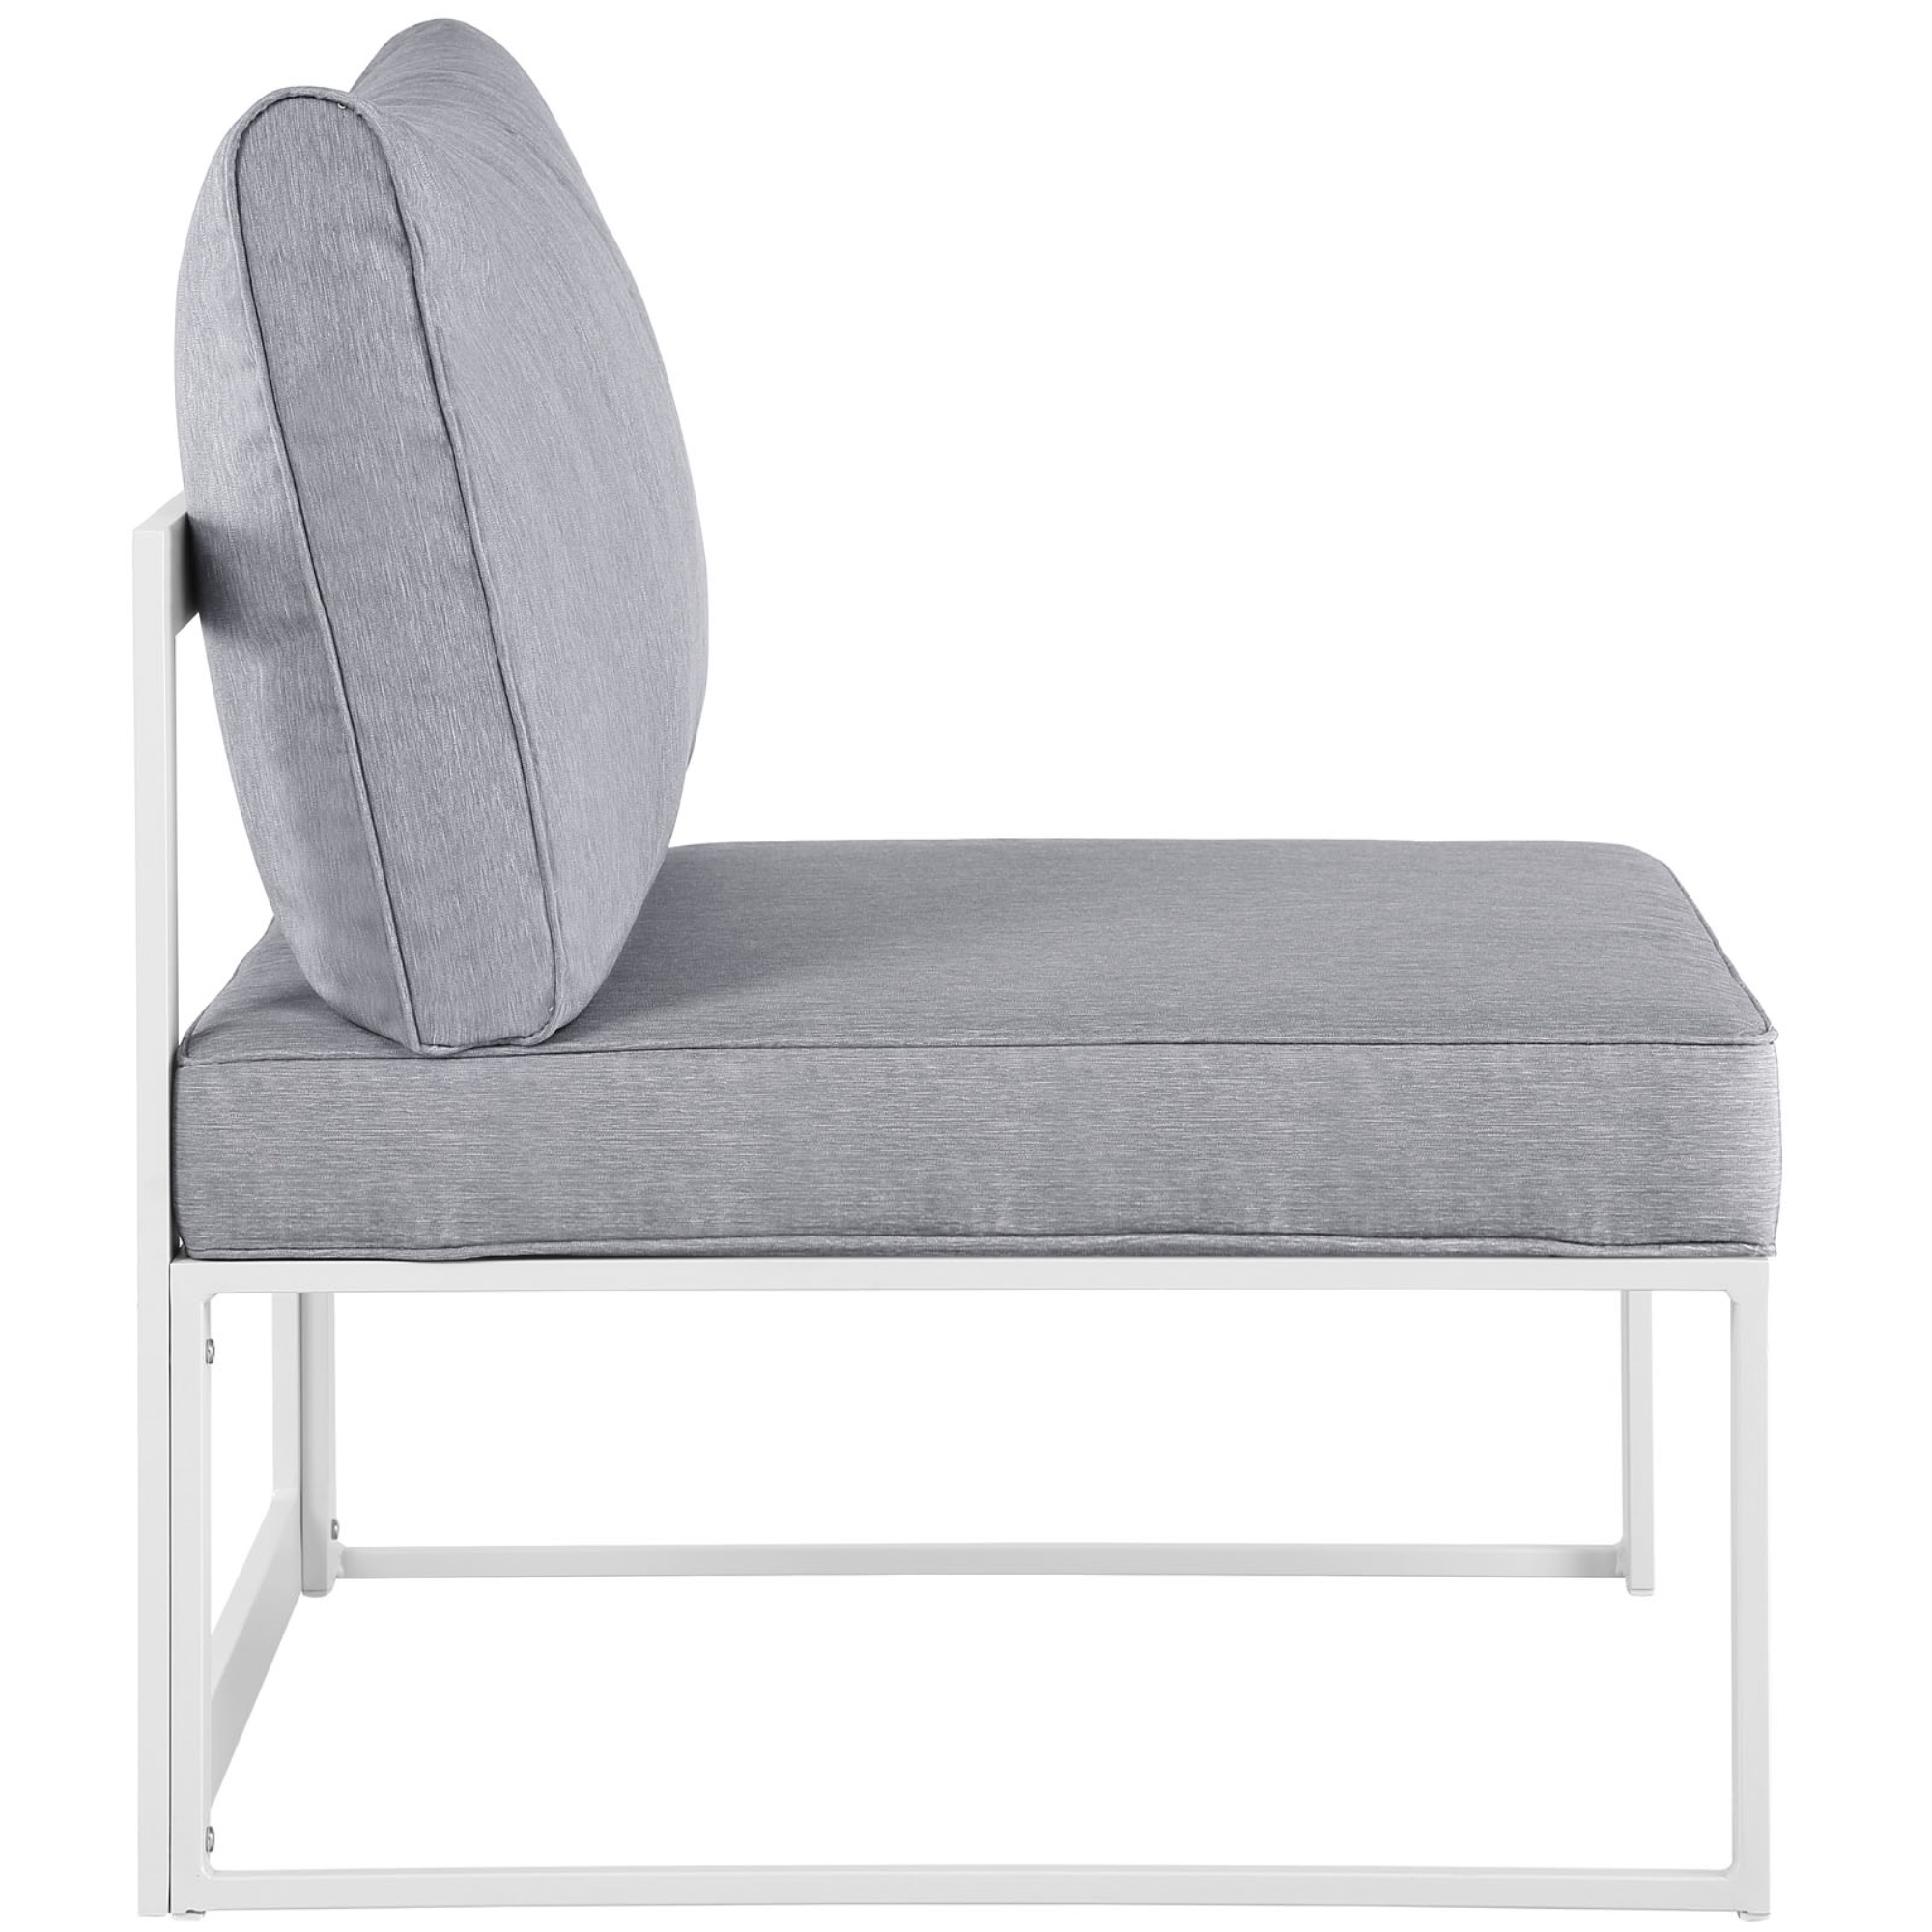 Ergode Fortuna 8 Piece Outdoor Patio Sectional Sofa Set - White Gray